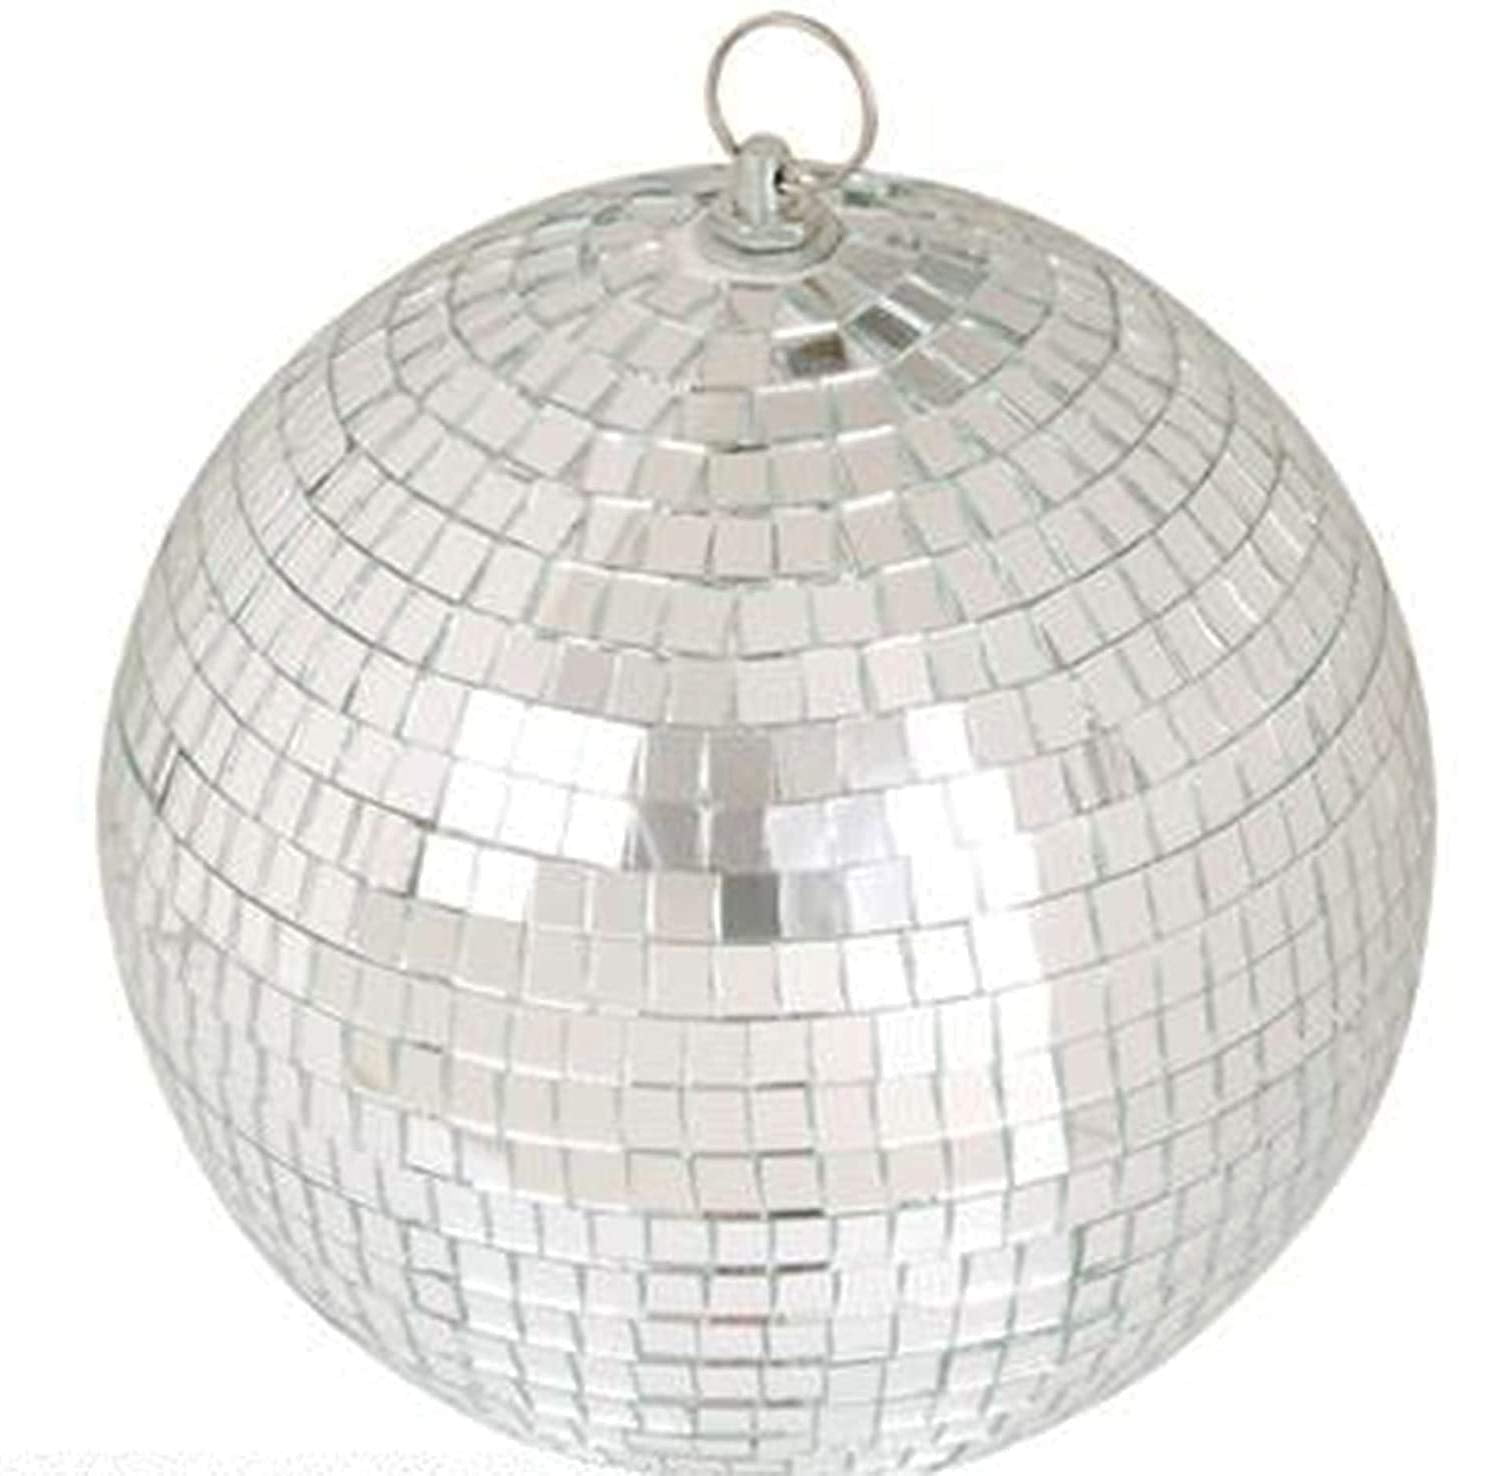 Mirror Ball Classic Silver 7 Inch Disco Ball Mirror Tiles